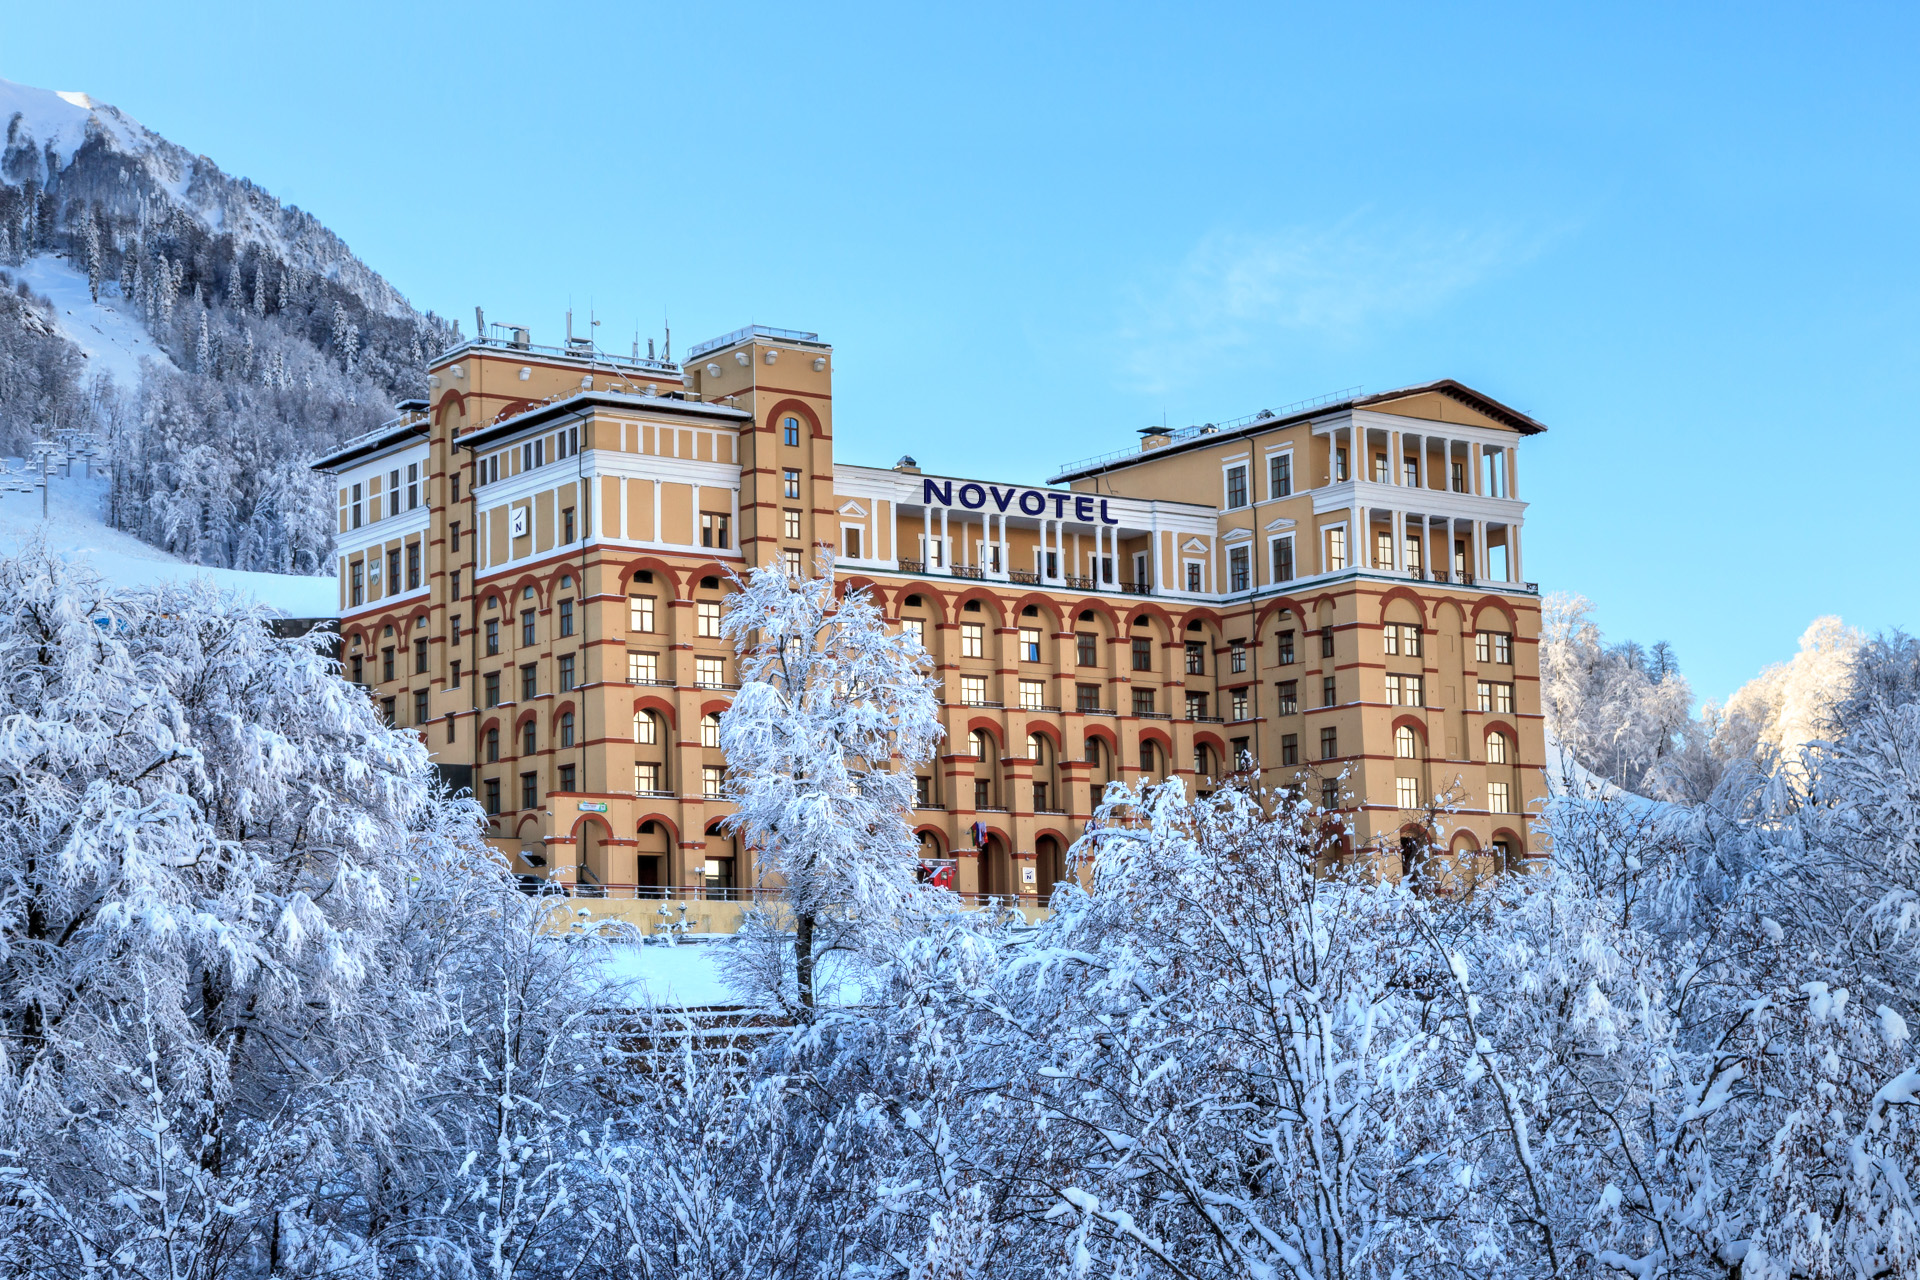 Загрузка отелей горного кластера Сочи в минувшие праздничные дни превысила 95%